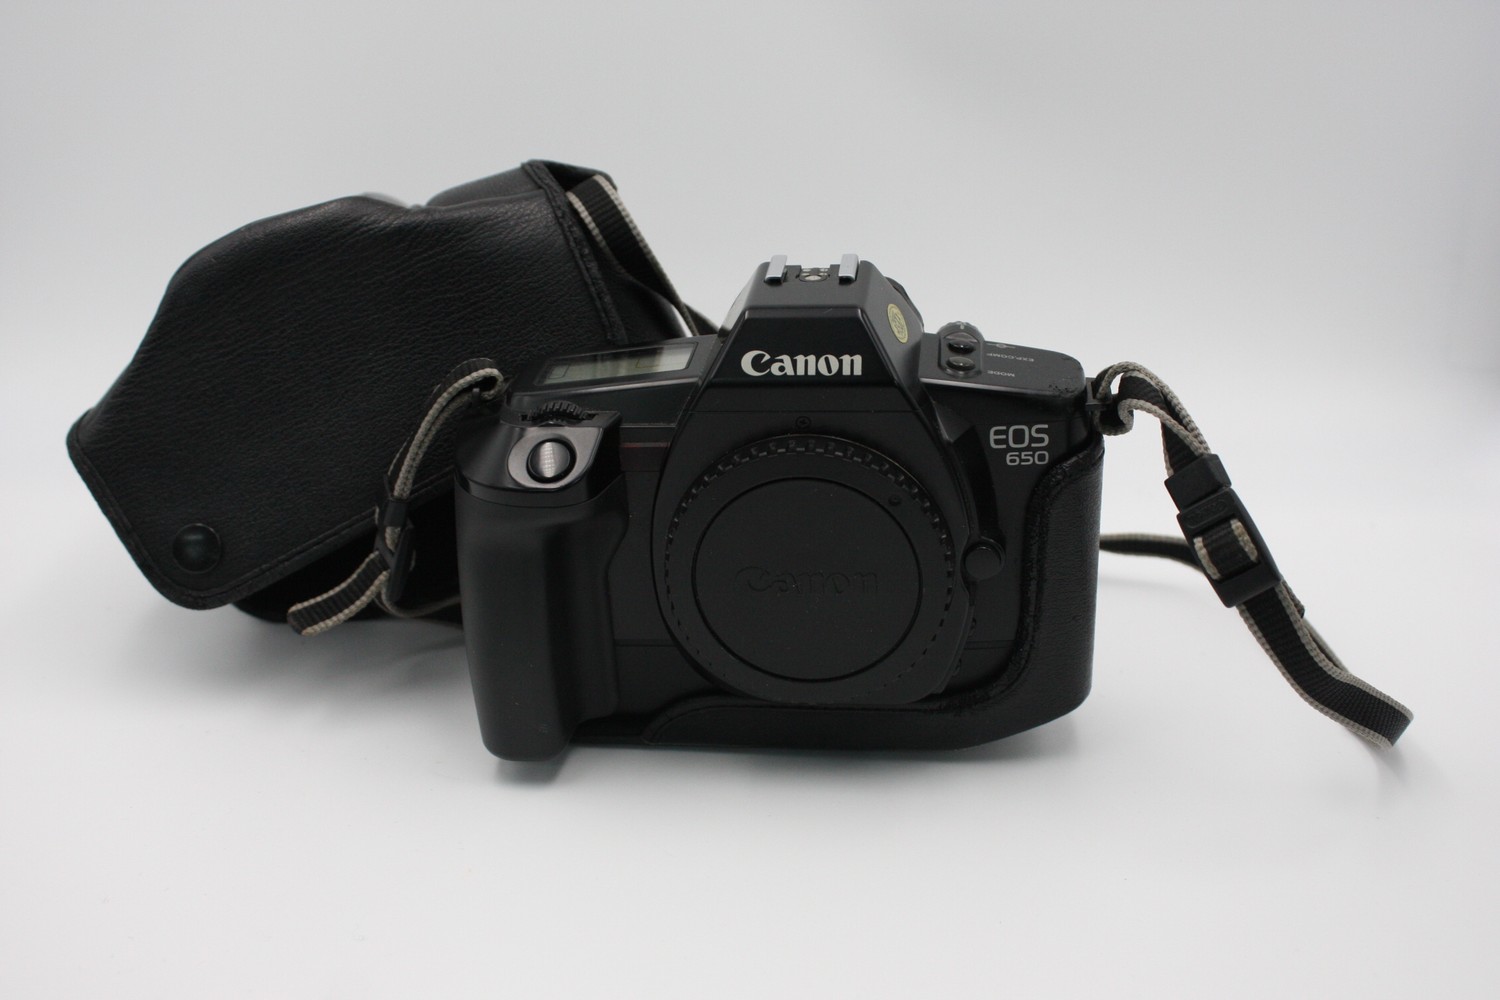 Canon EOS 650 SLR Film Camera No. 1256679 (BODY ONLY) w/ Ori...